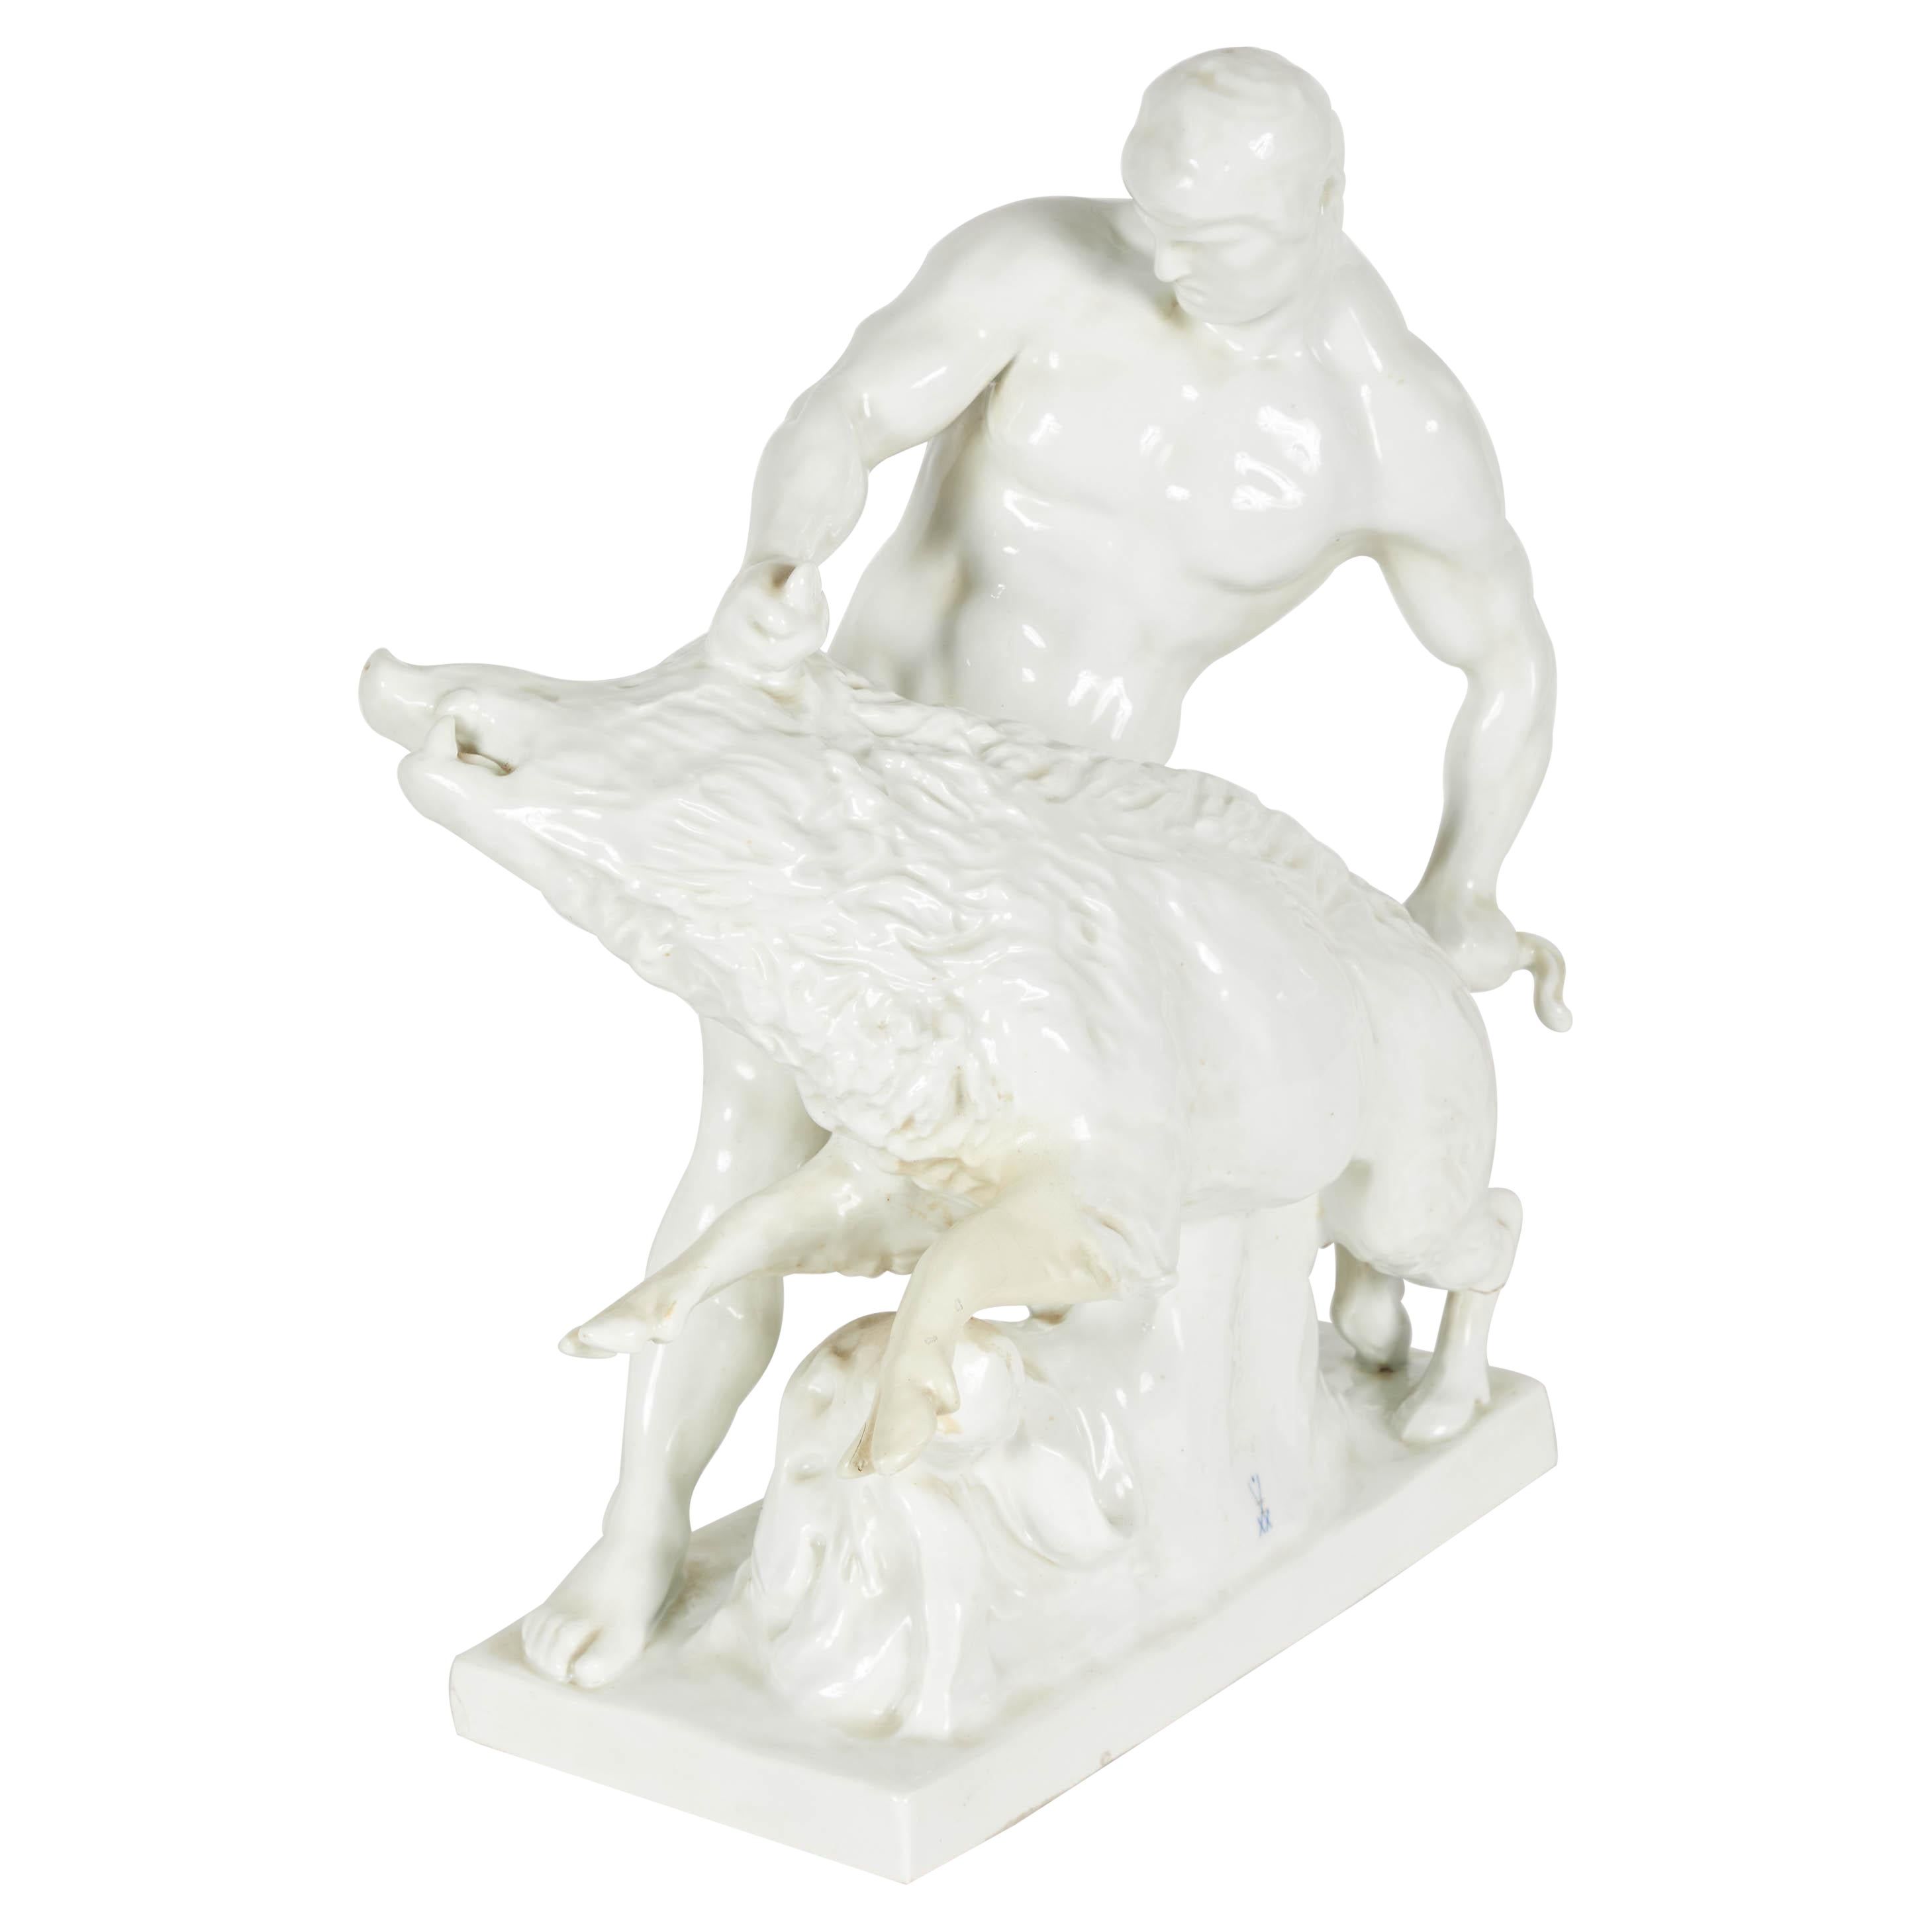 White Porcelain Sculpture of Man Wrestling Boar